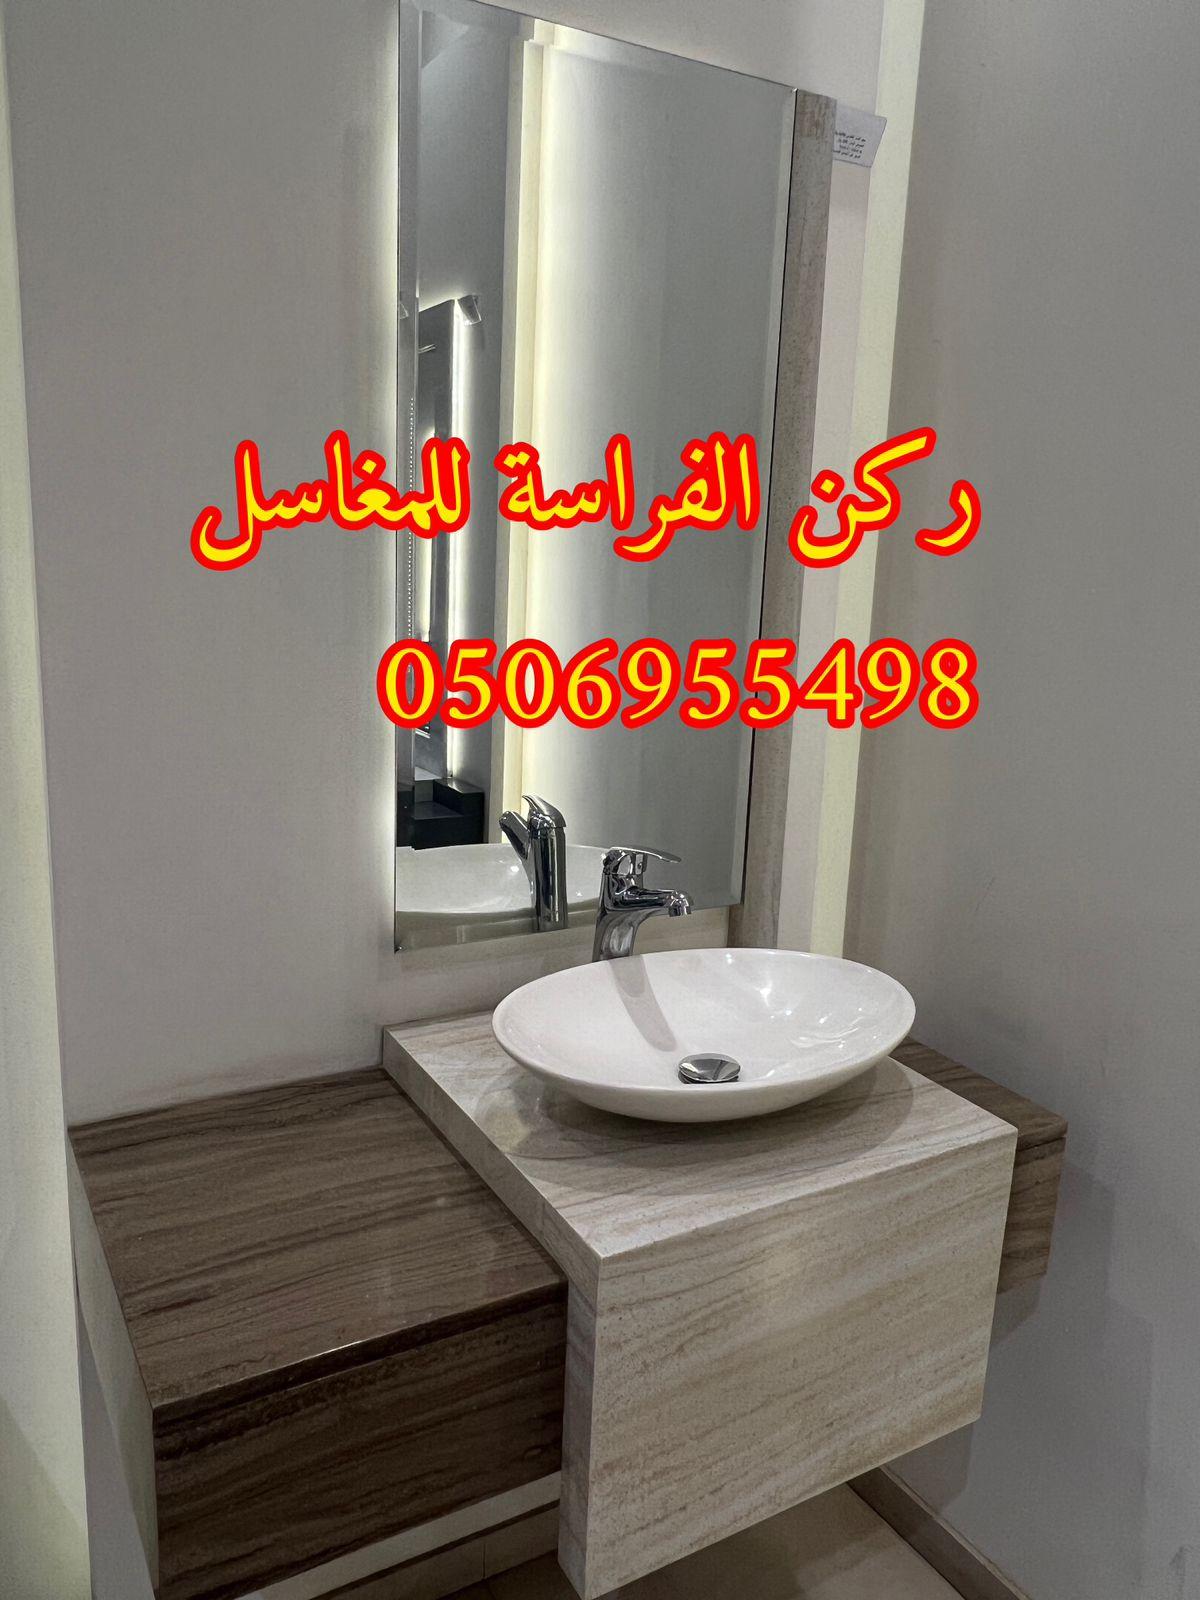 الرياض - احواض مغاسل رخام في الرياض,0506955498 702894979